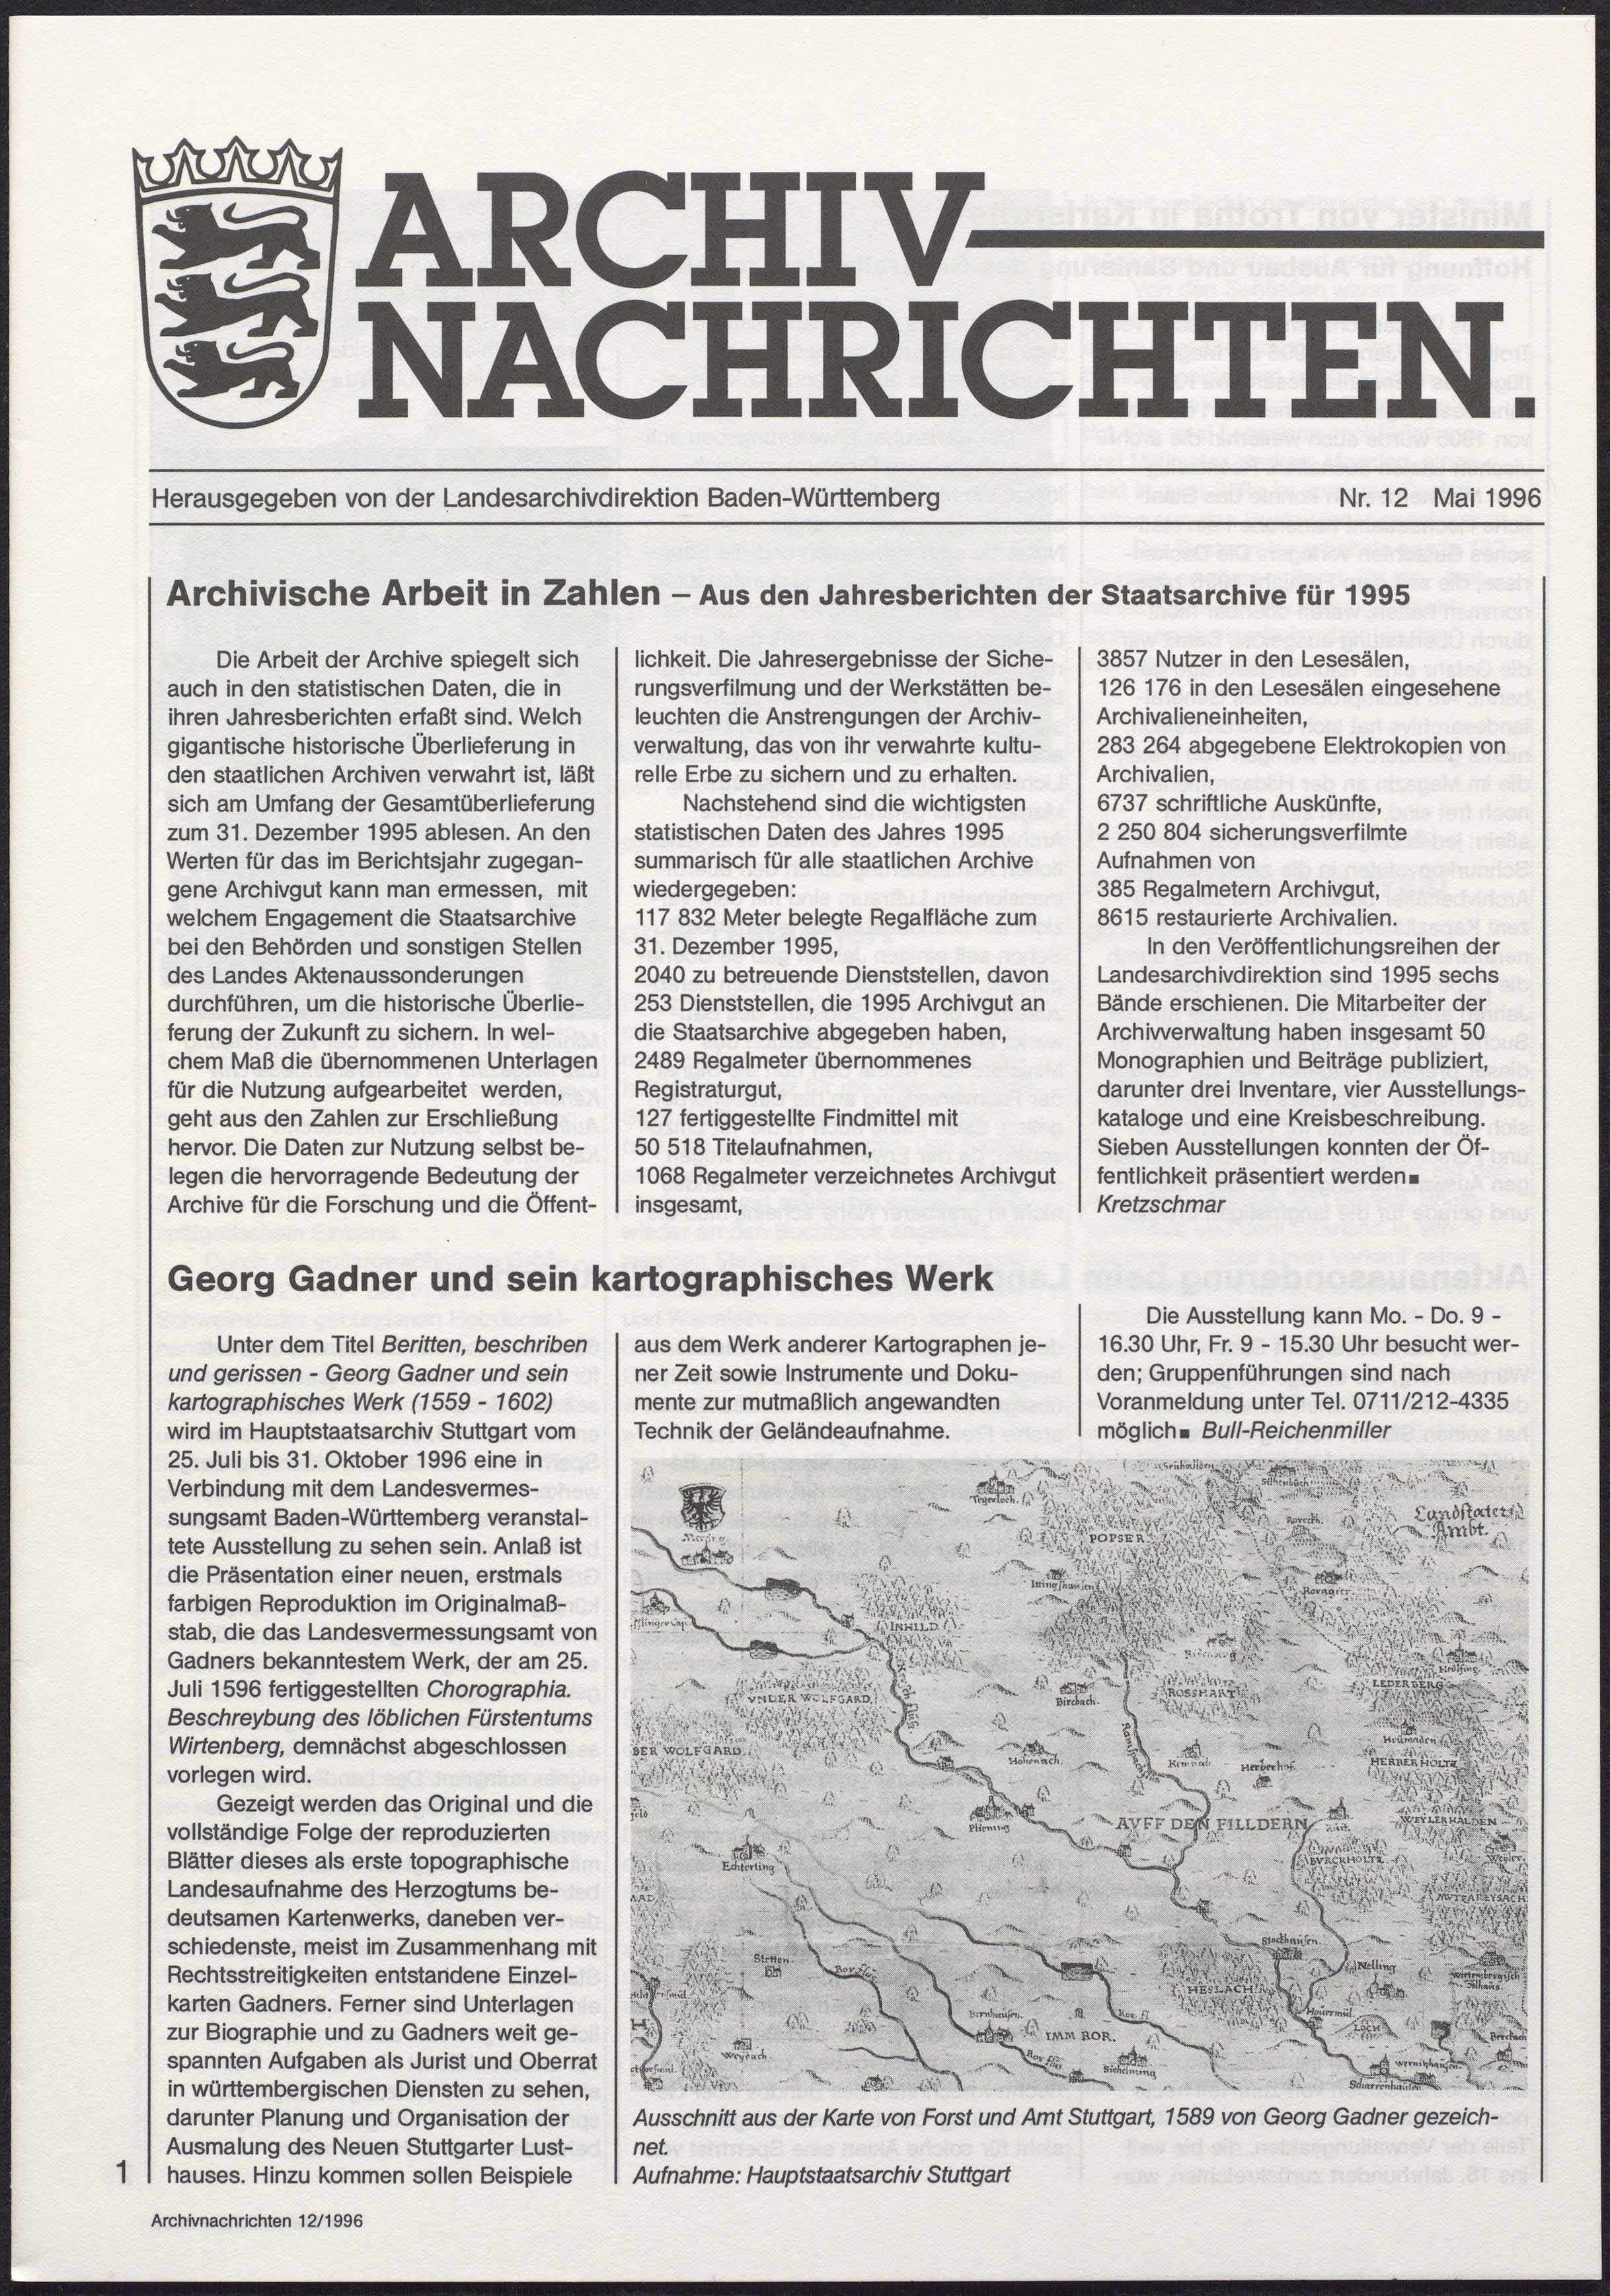                     Ansehen Nr. 12 (1996): Archivnachrichten
                